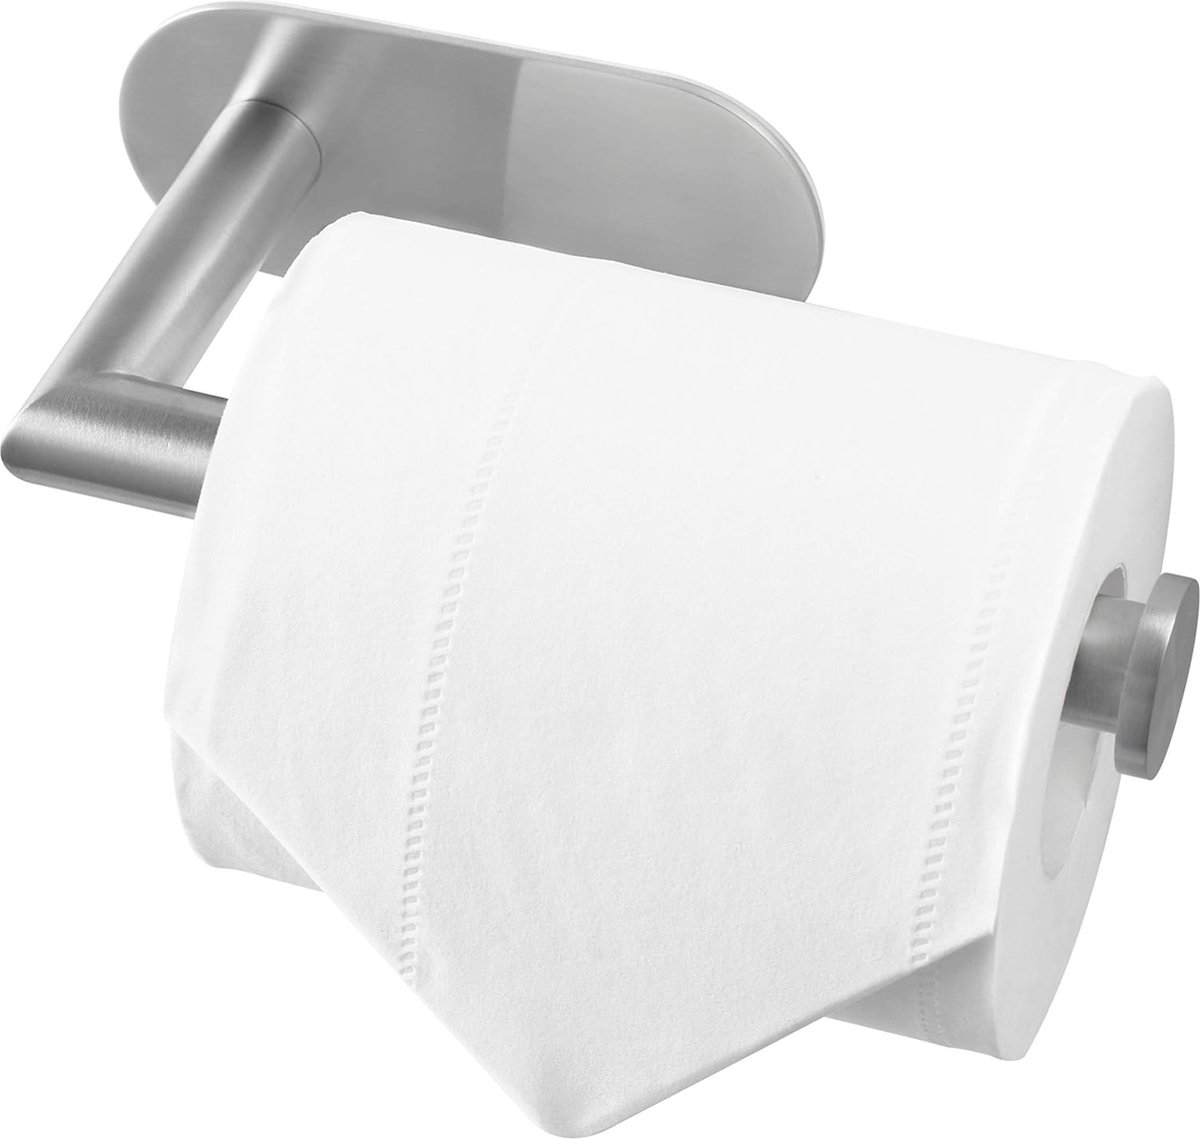 Toiletrolhouder RVS zilver mat - Zonder boren - Voor wc of badkamer - Roestvrij staal